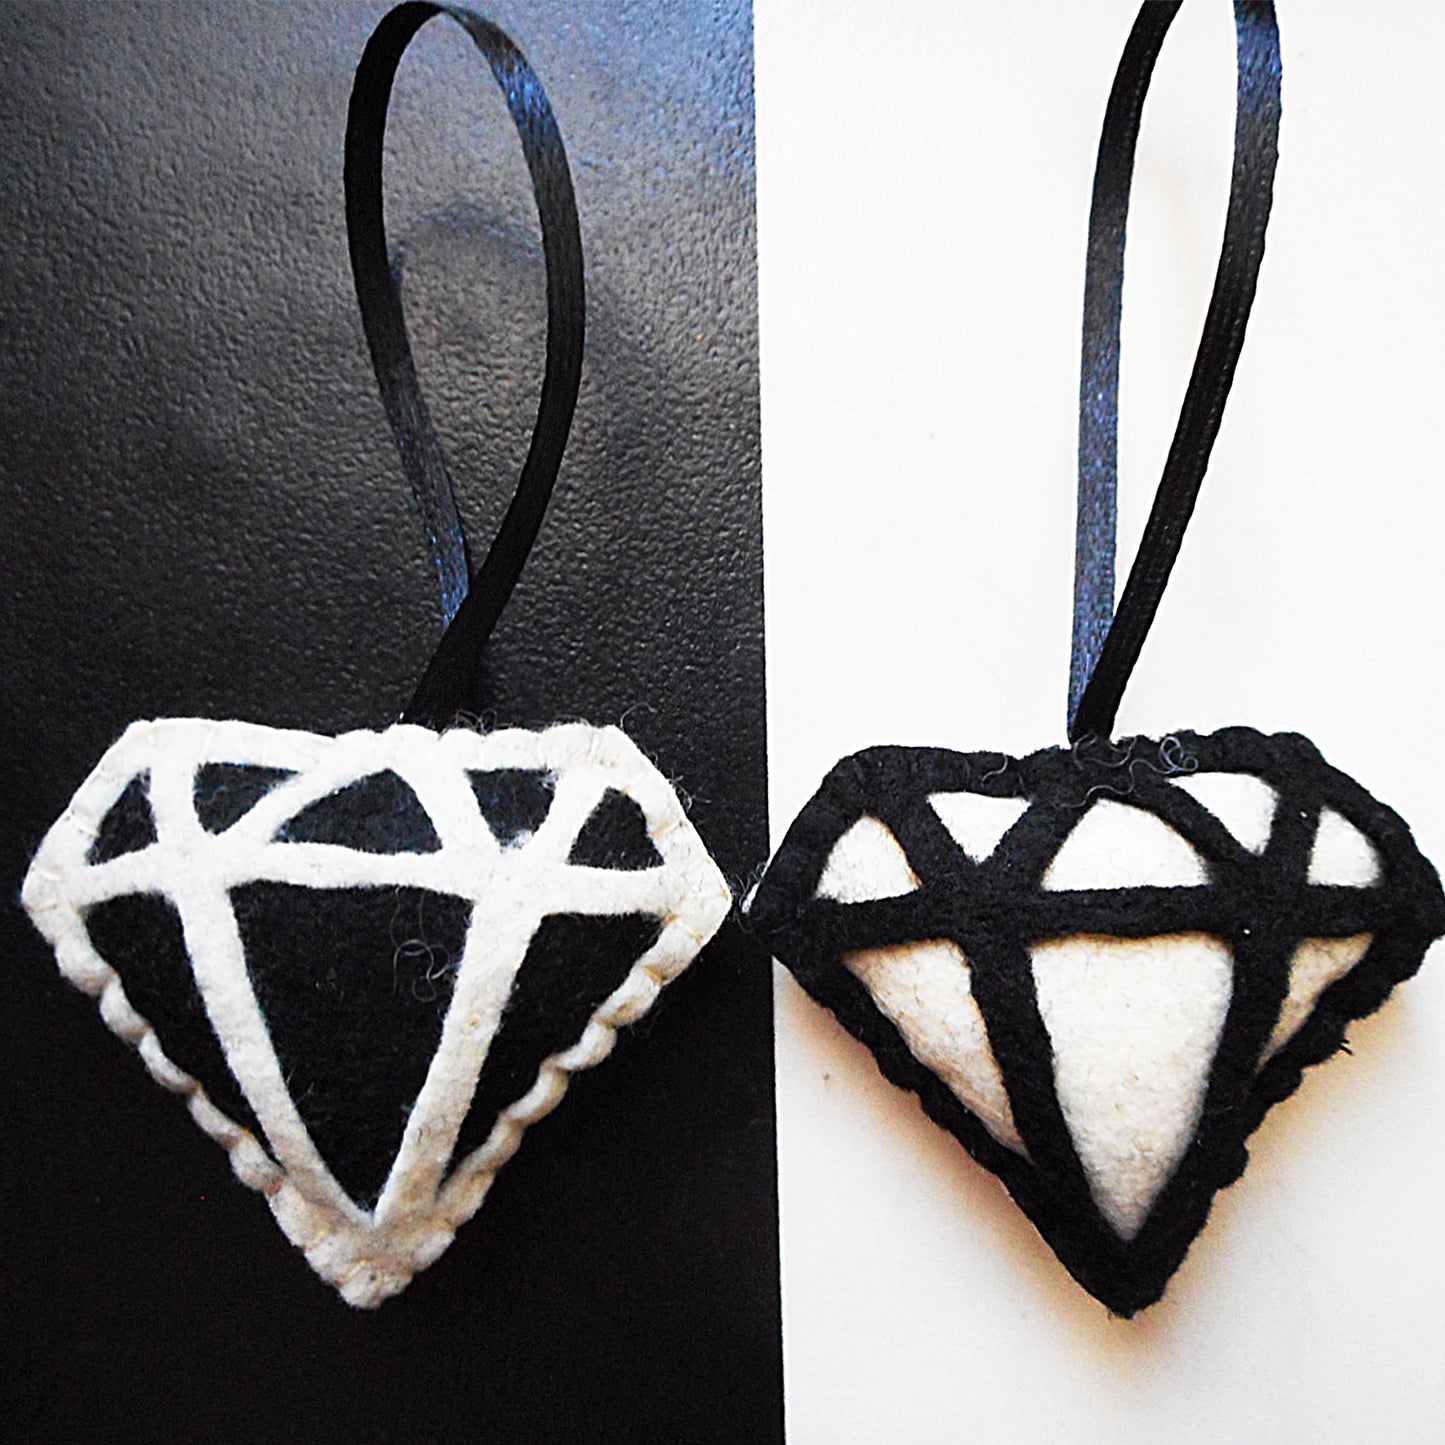 Diese "Yin und Yang" Diamant-Ornamente aus Filz sind handgenäht und werden als "2er-Set" geliefert. 